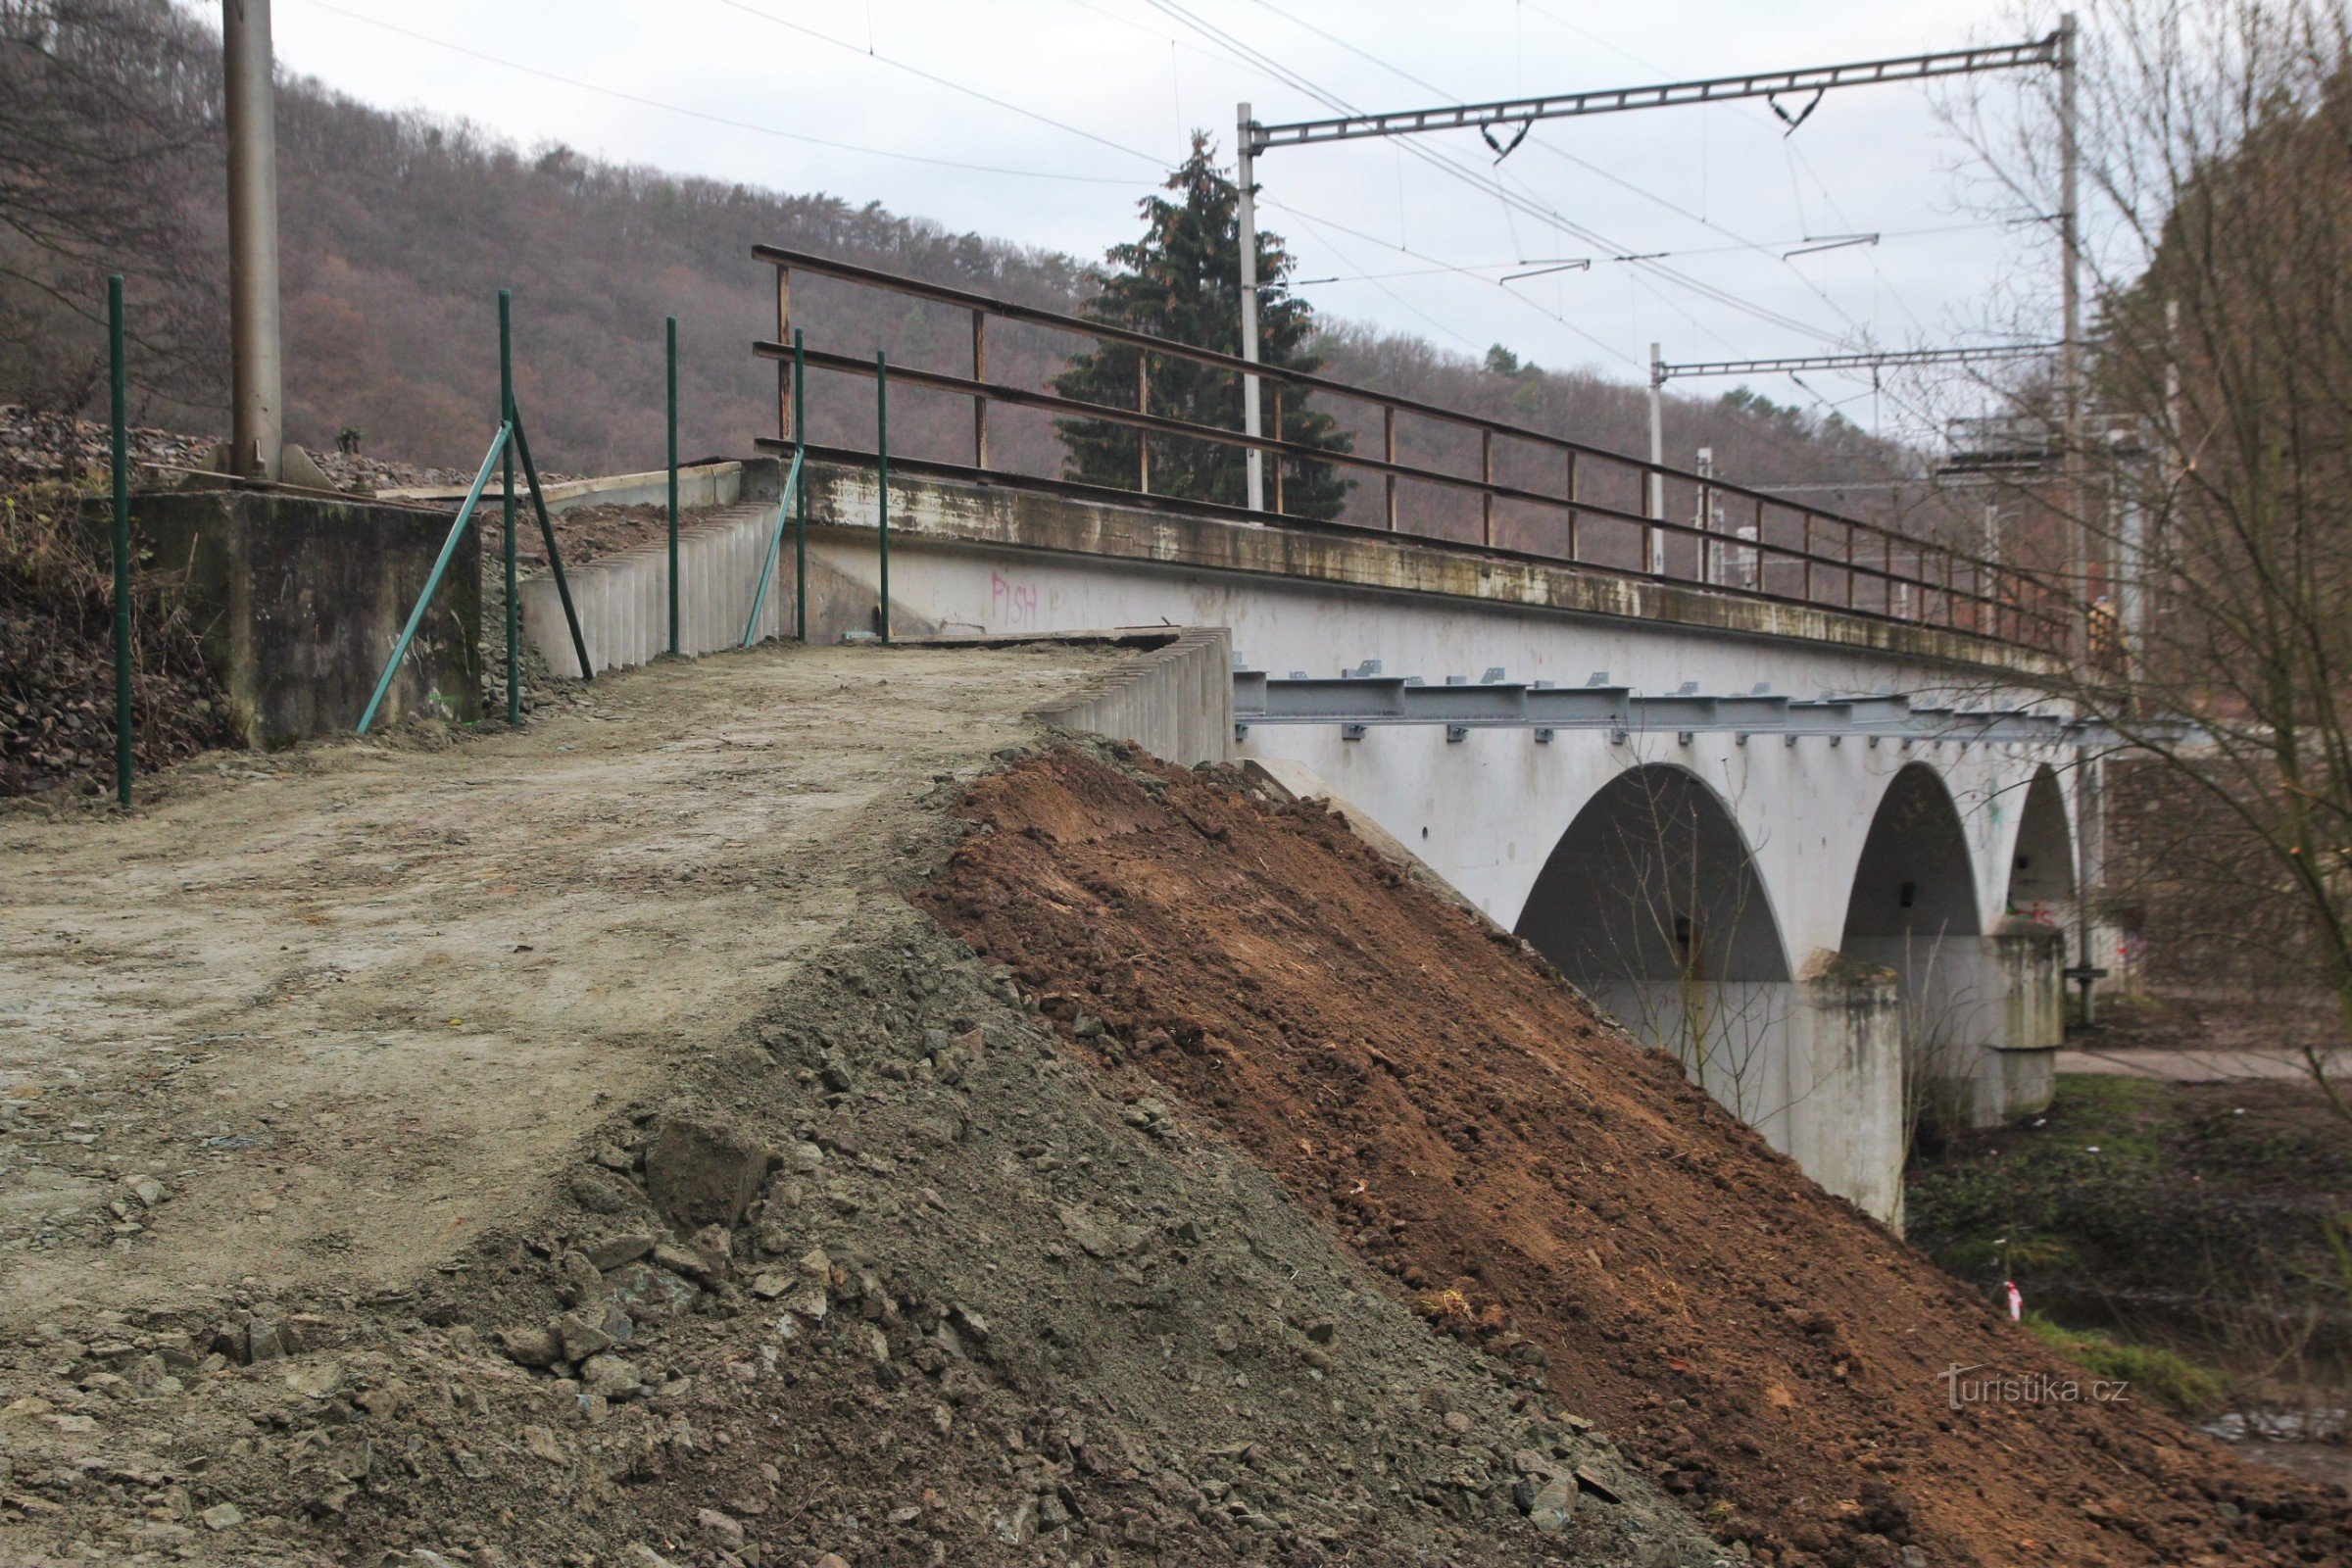 Een loopbrug geleidelijk ingebouwd in de muur van de spoorbrug